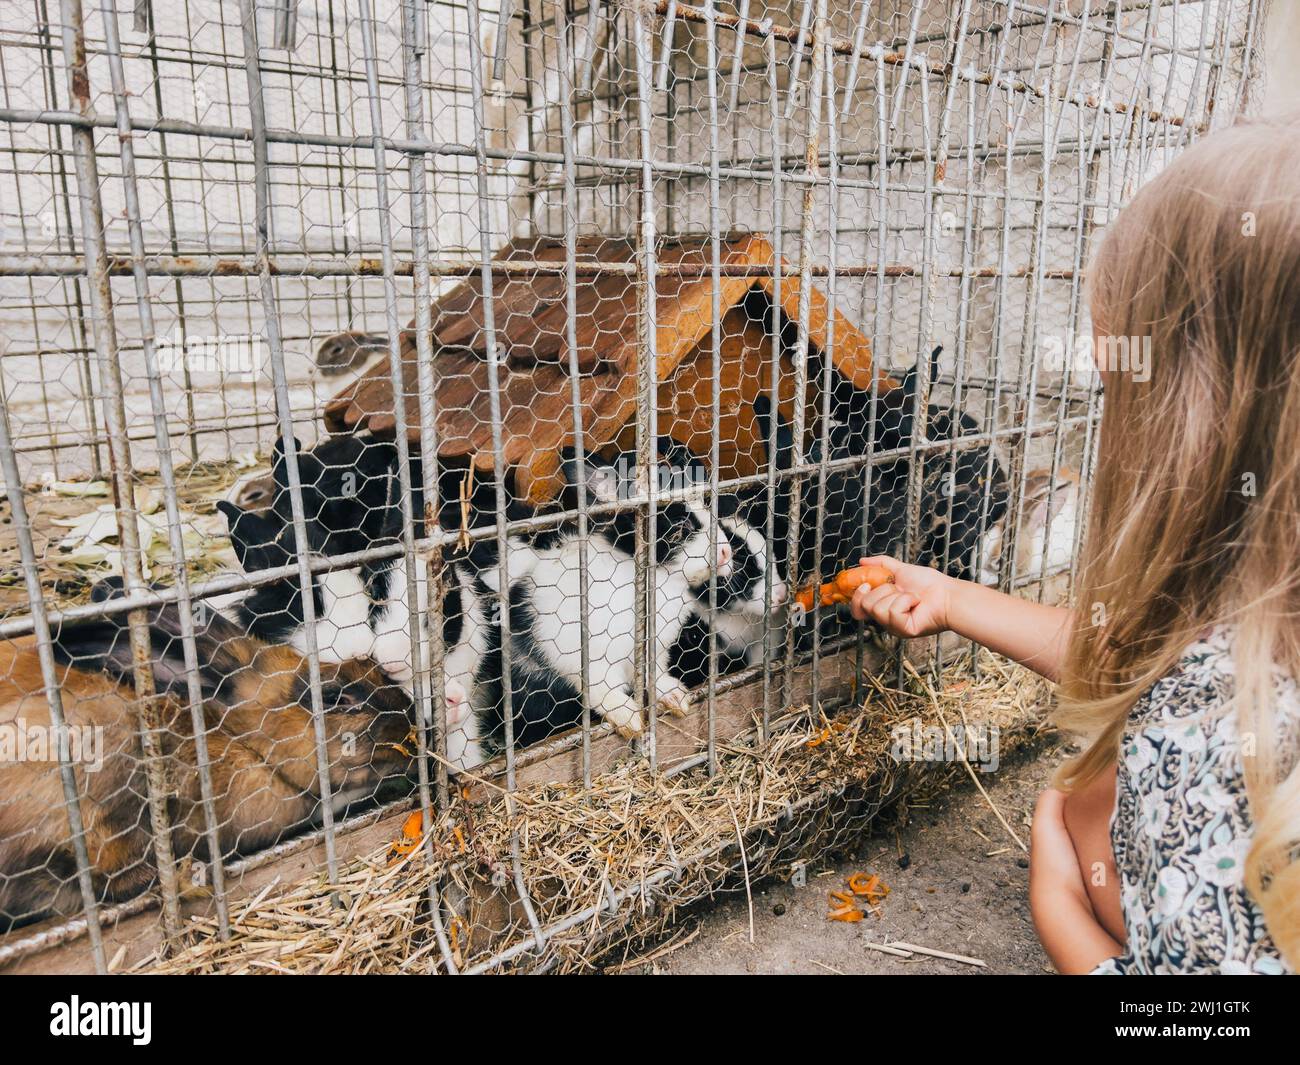 Das kleine Mädchen füttert Kaninchen Karotten, indem es sie durch ein Netz in einem Fahrerlager schiebt Stockfoto